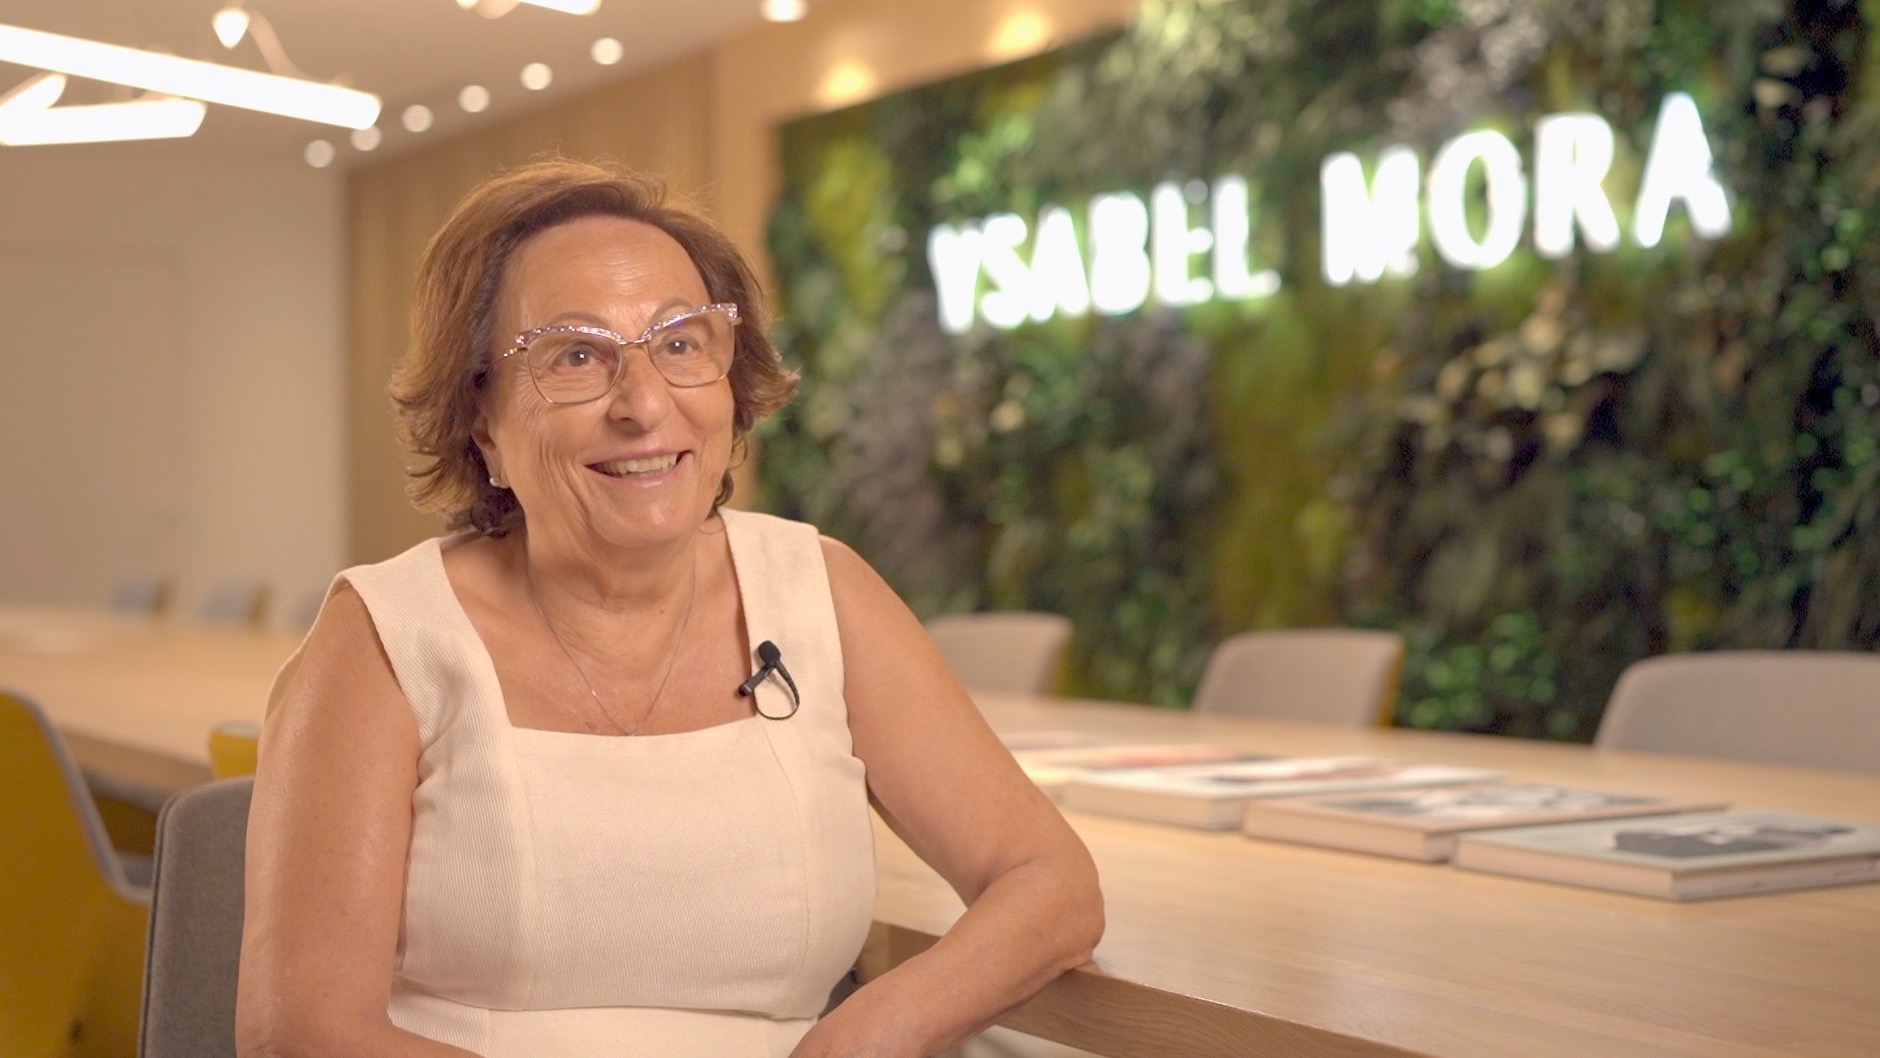 Entrevista a Ysabel Mora, presidenta honorífica de Ysabel Mora